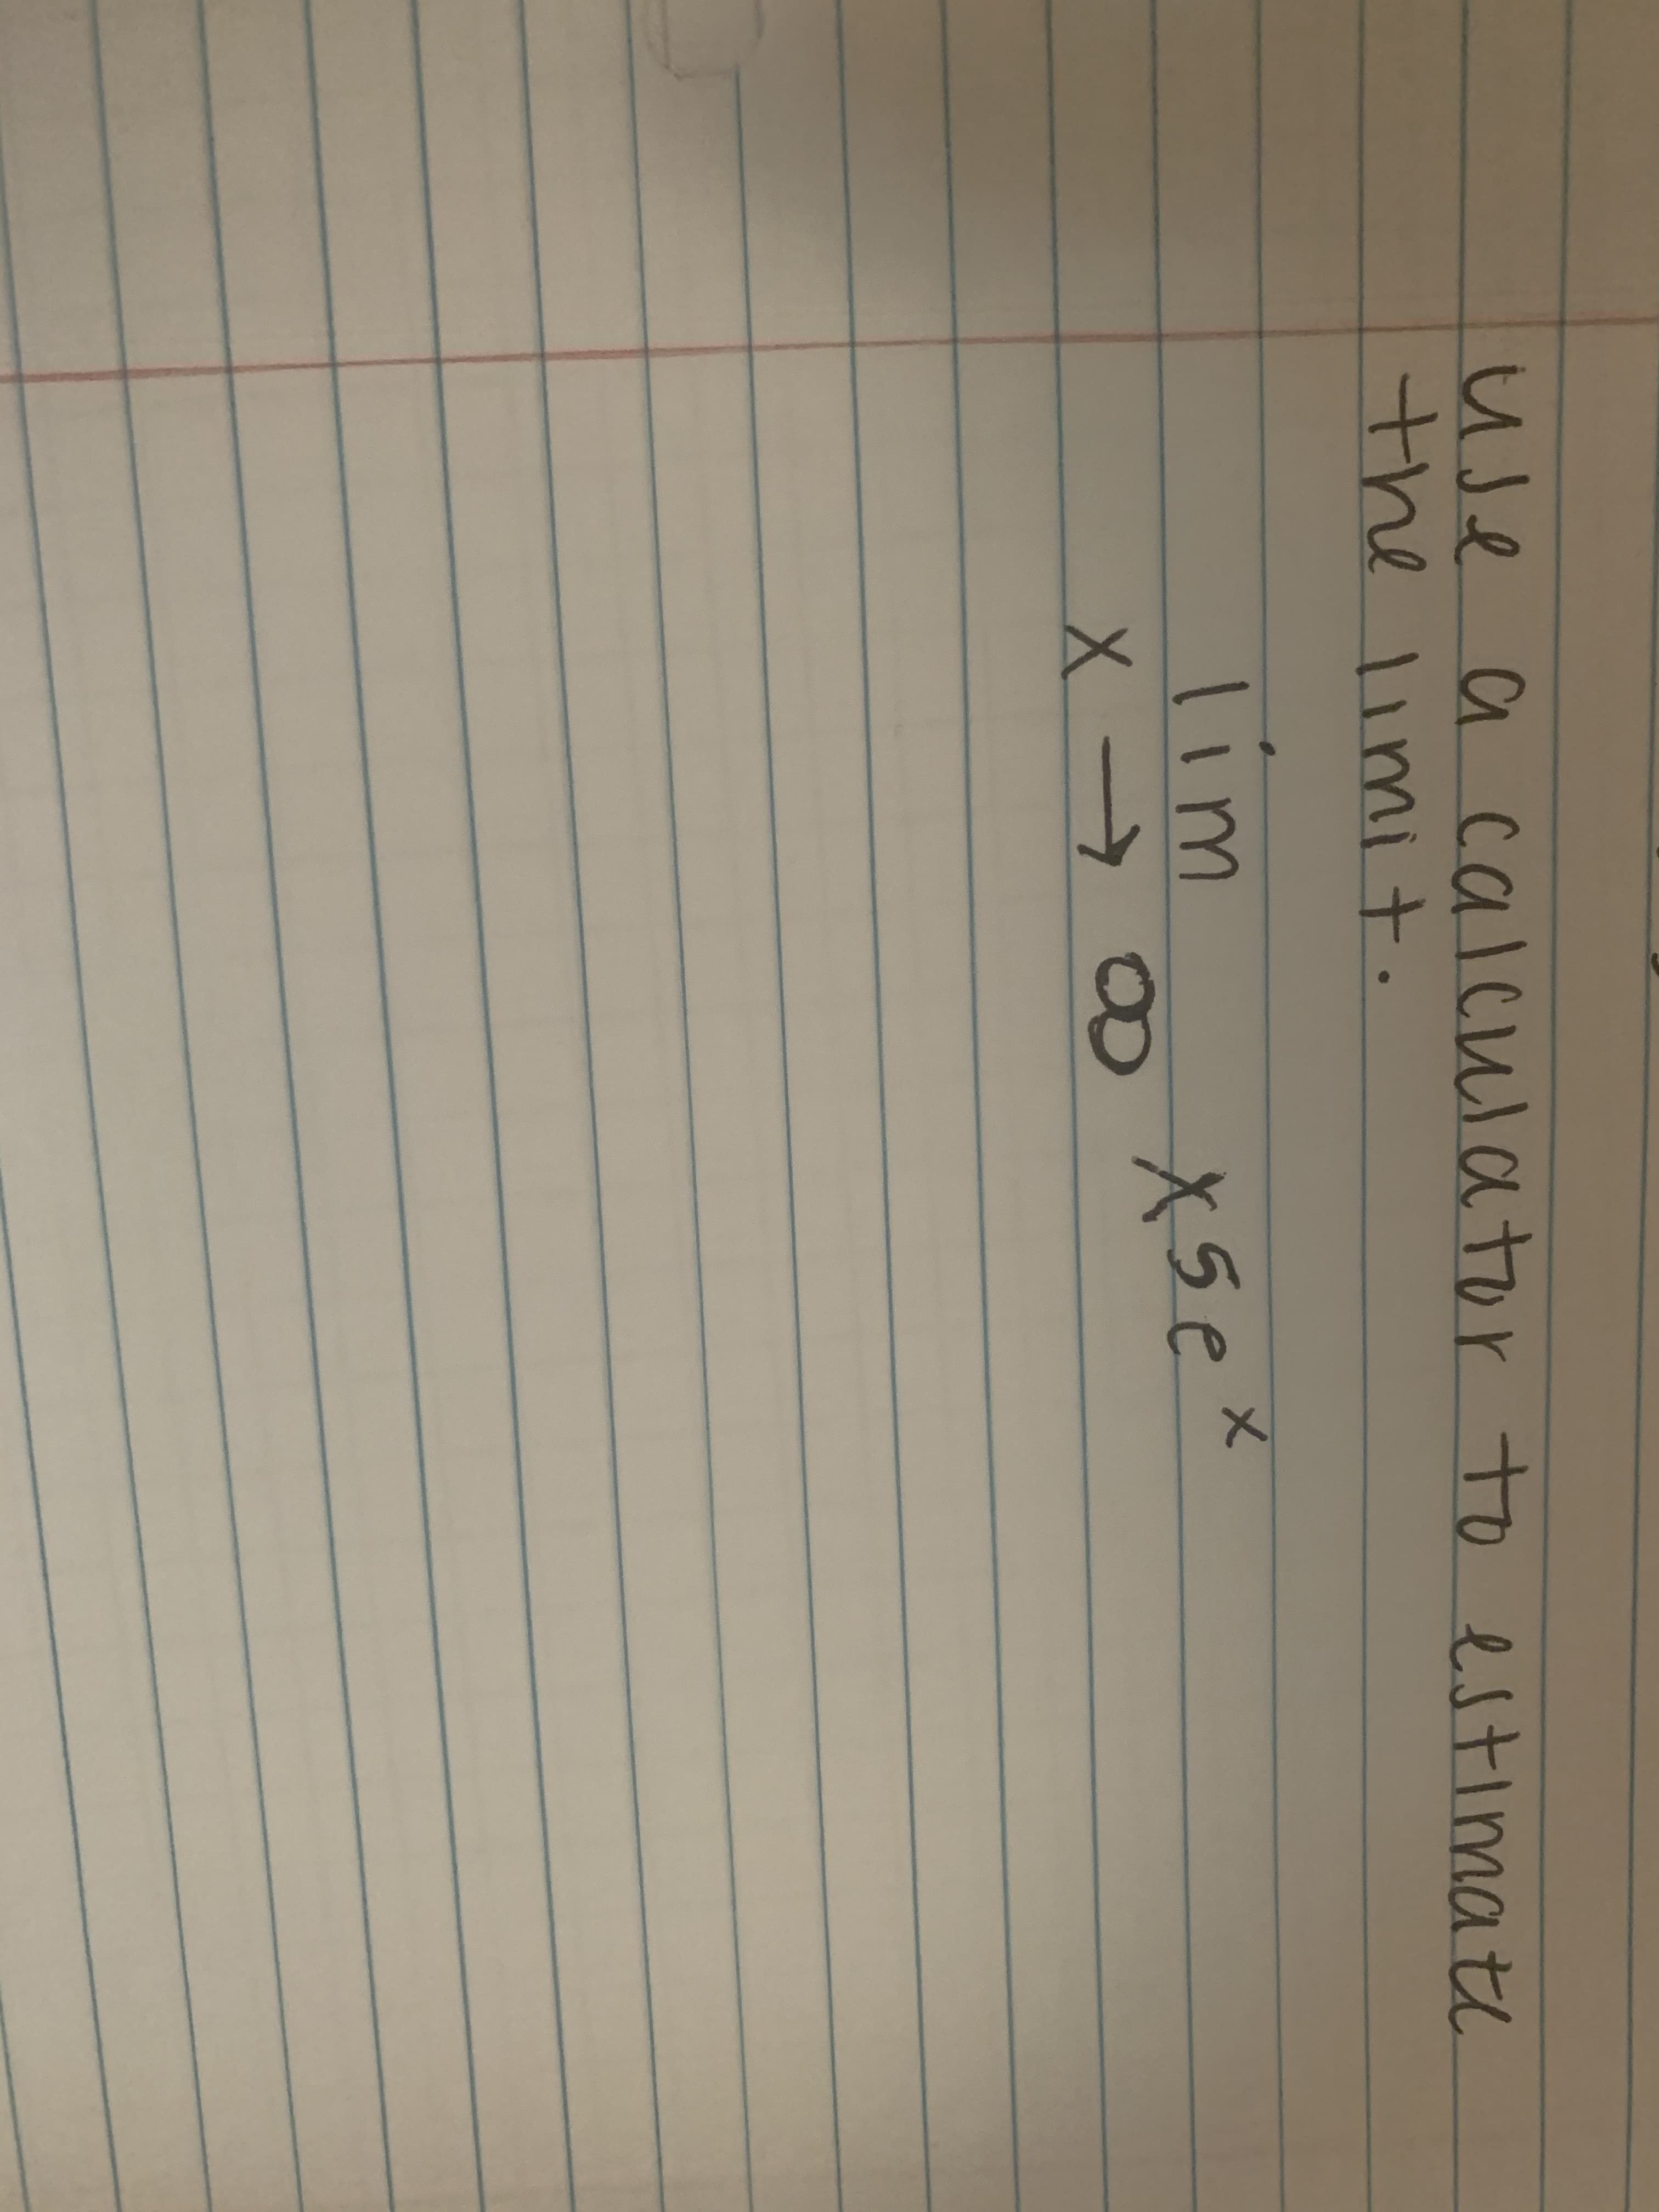 Use a calculator to estimate
the limit.
1im
X5e
